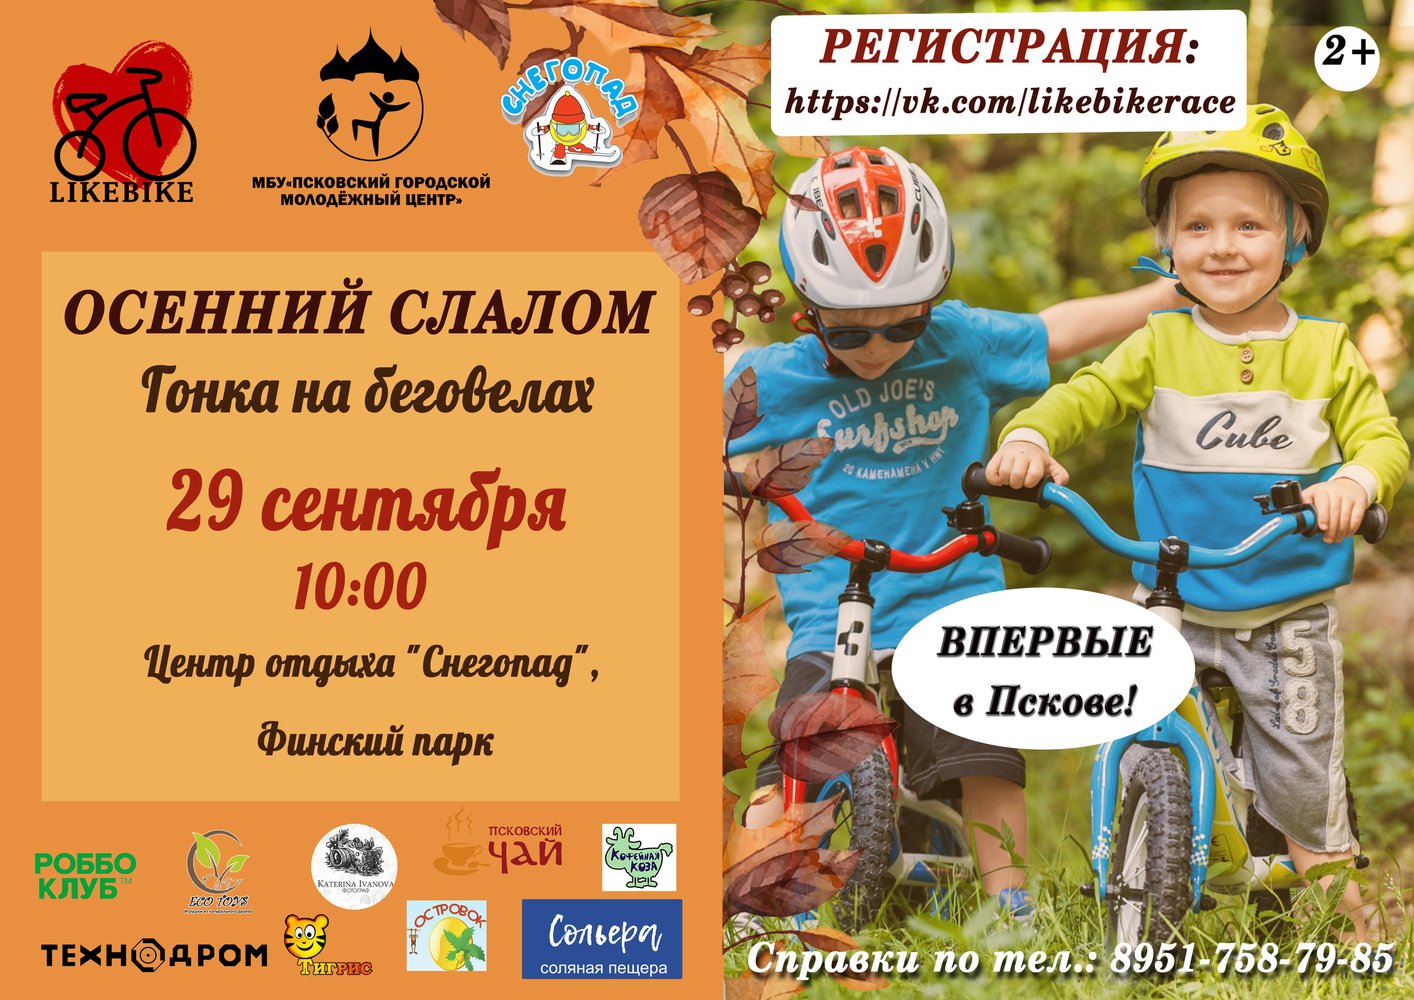 Псковский городской молодёжный центр приглашает псковичей принять участие в соревновании на беговелах для детей, которые пройдут 29 сентября.